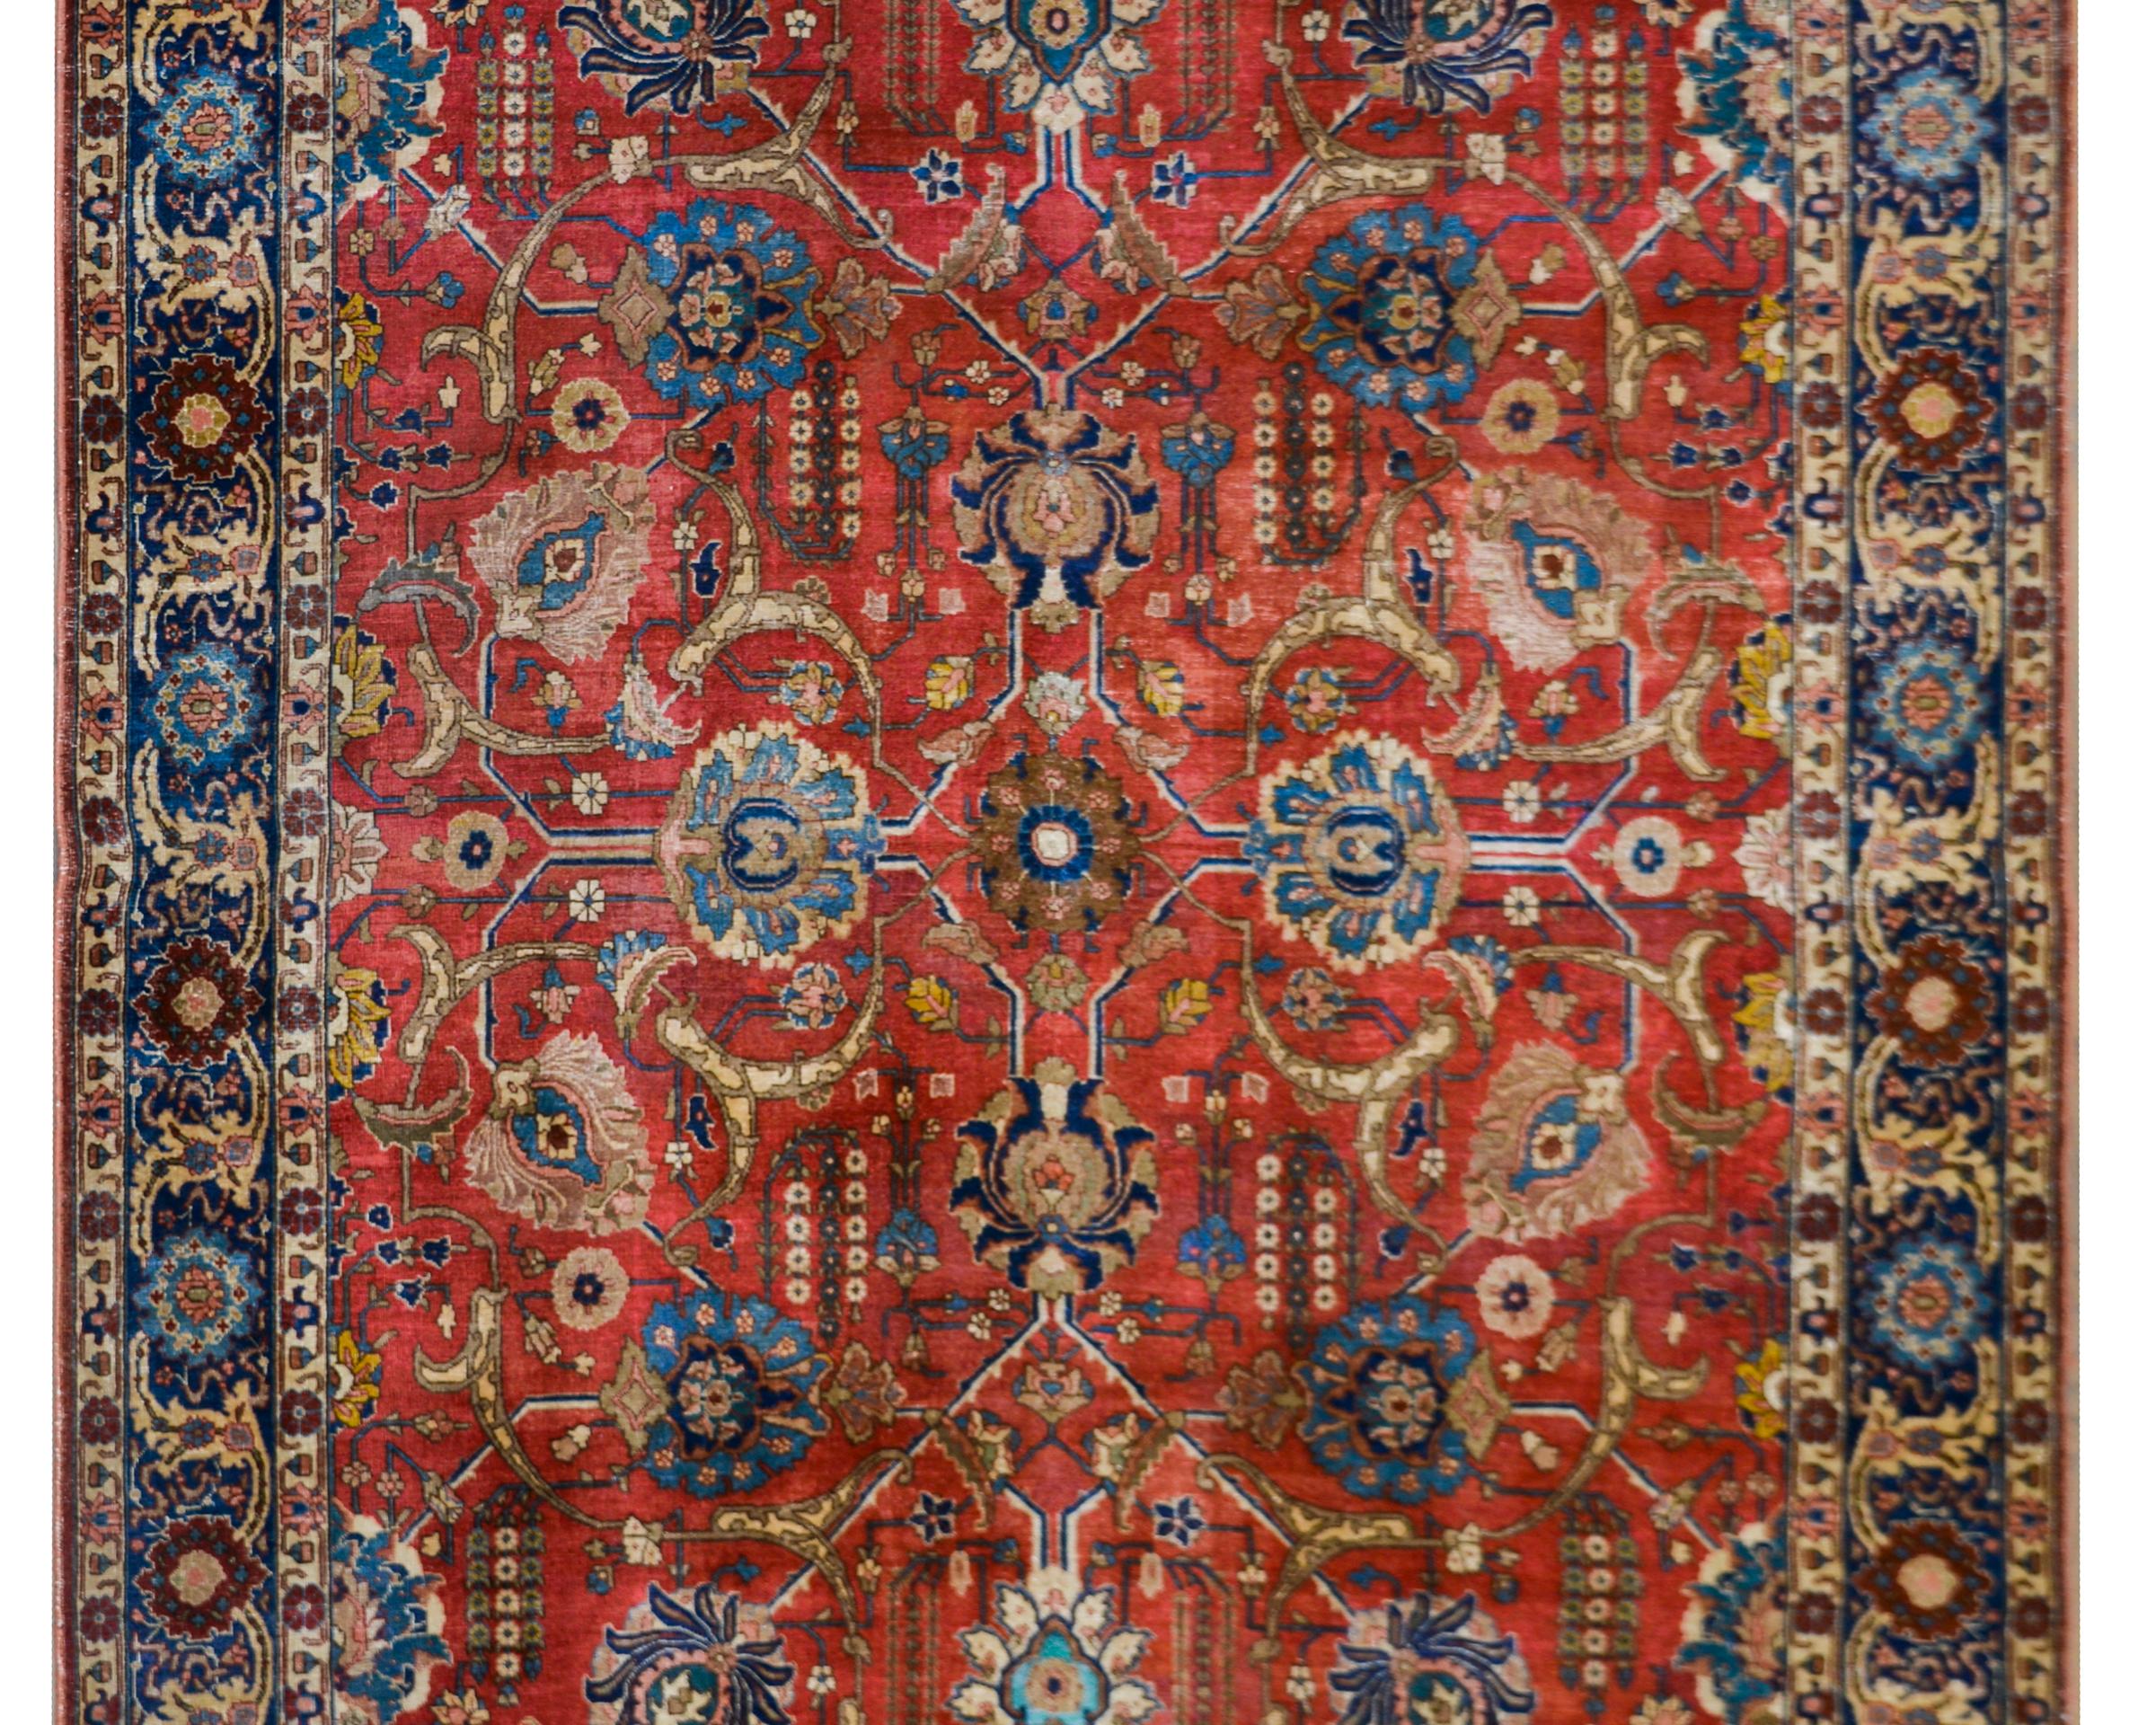 Hervorragende frühen 20. Jahrhundert persischen Täbriz Teppich mit einem all-over groß angelegten Spiegel floralen Spalier-Muster gewebt in schönen reichen Juwel-Ton-Farben, einschließlich vor einem schönen karminroten Hintergrund. Die Bordüre ist